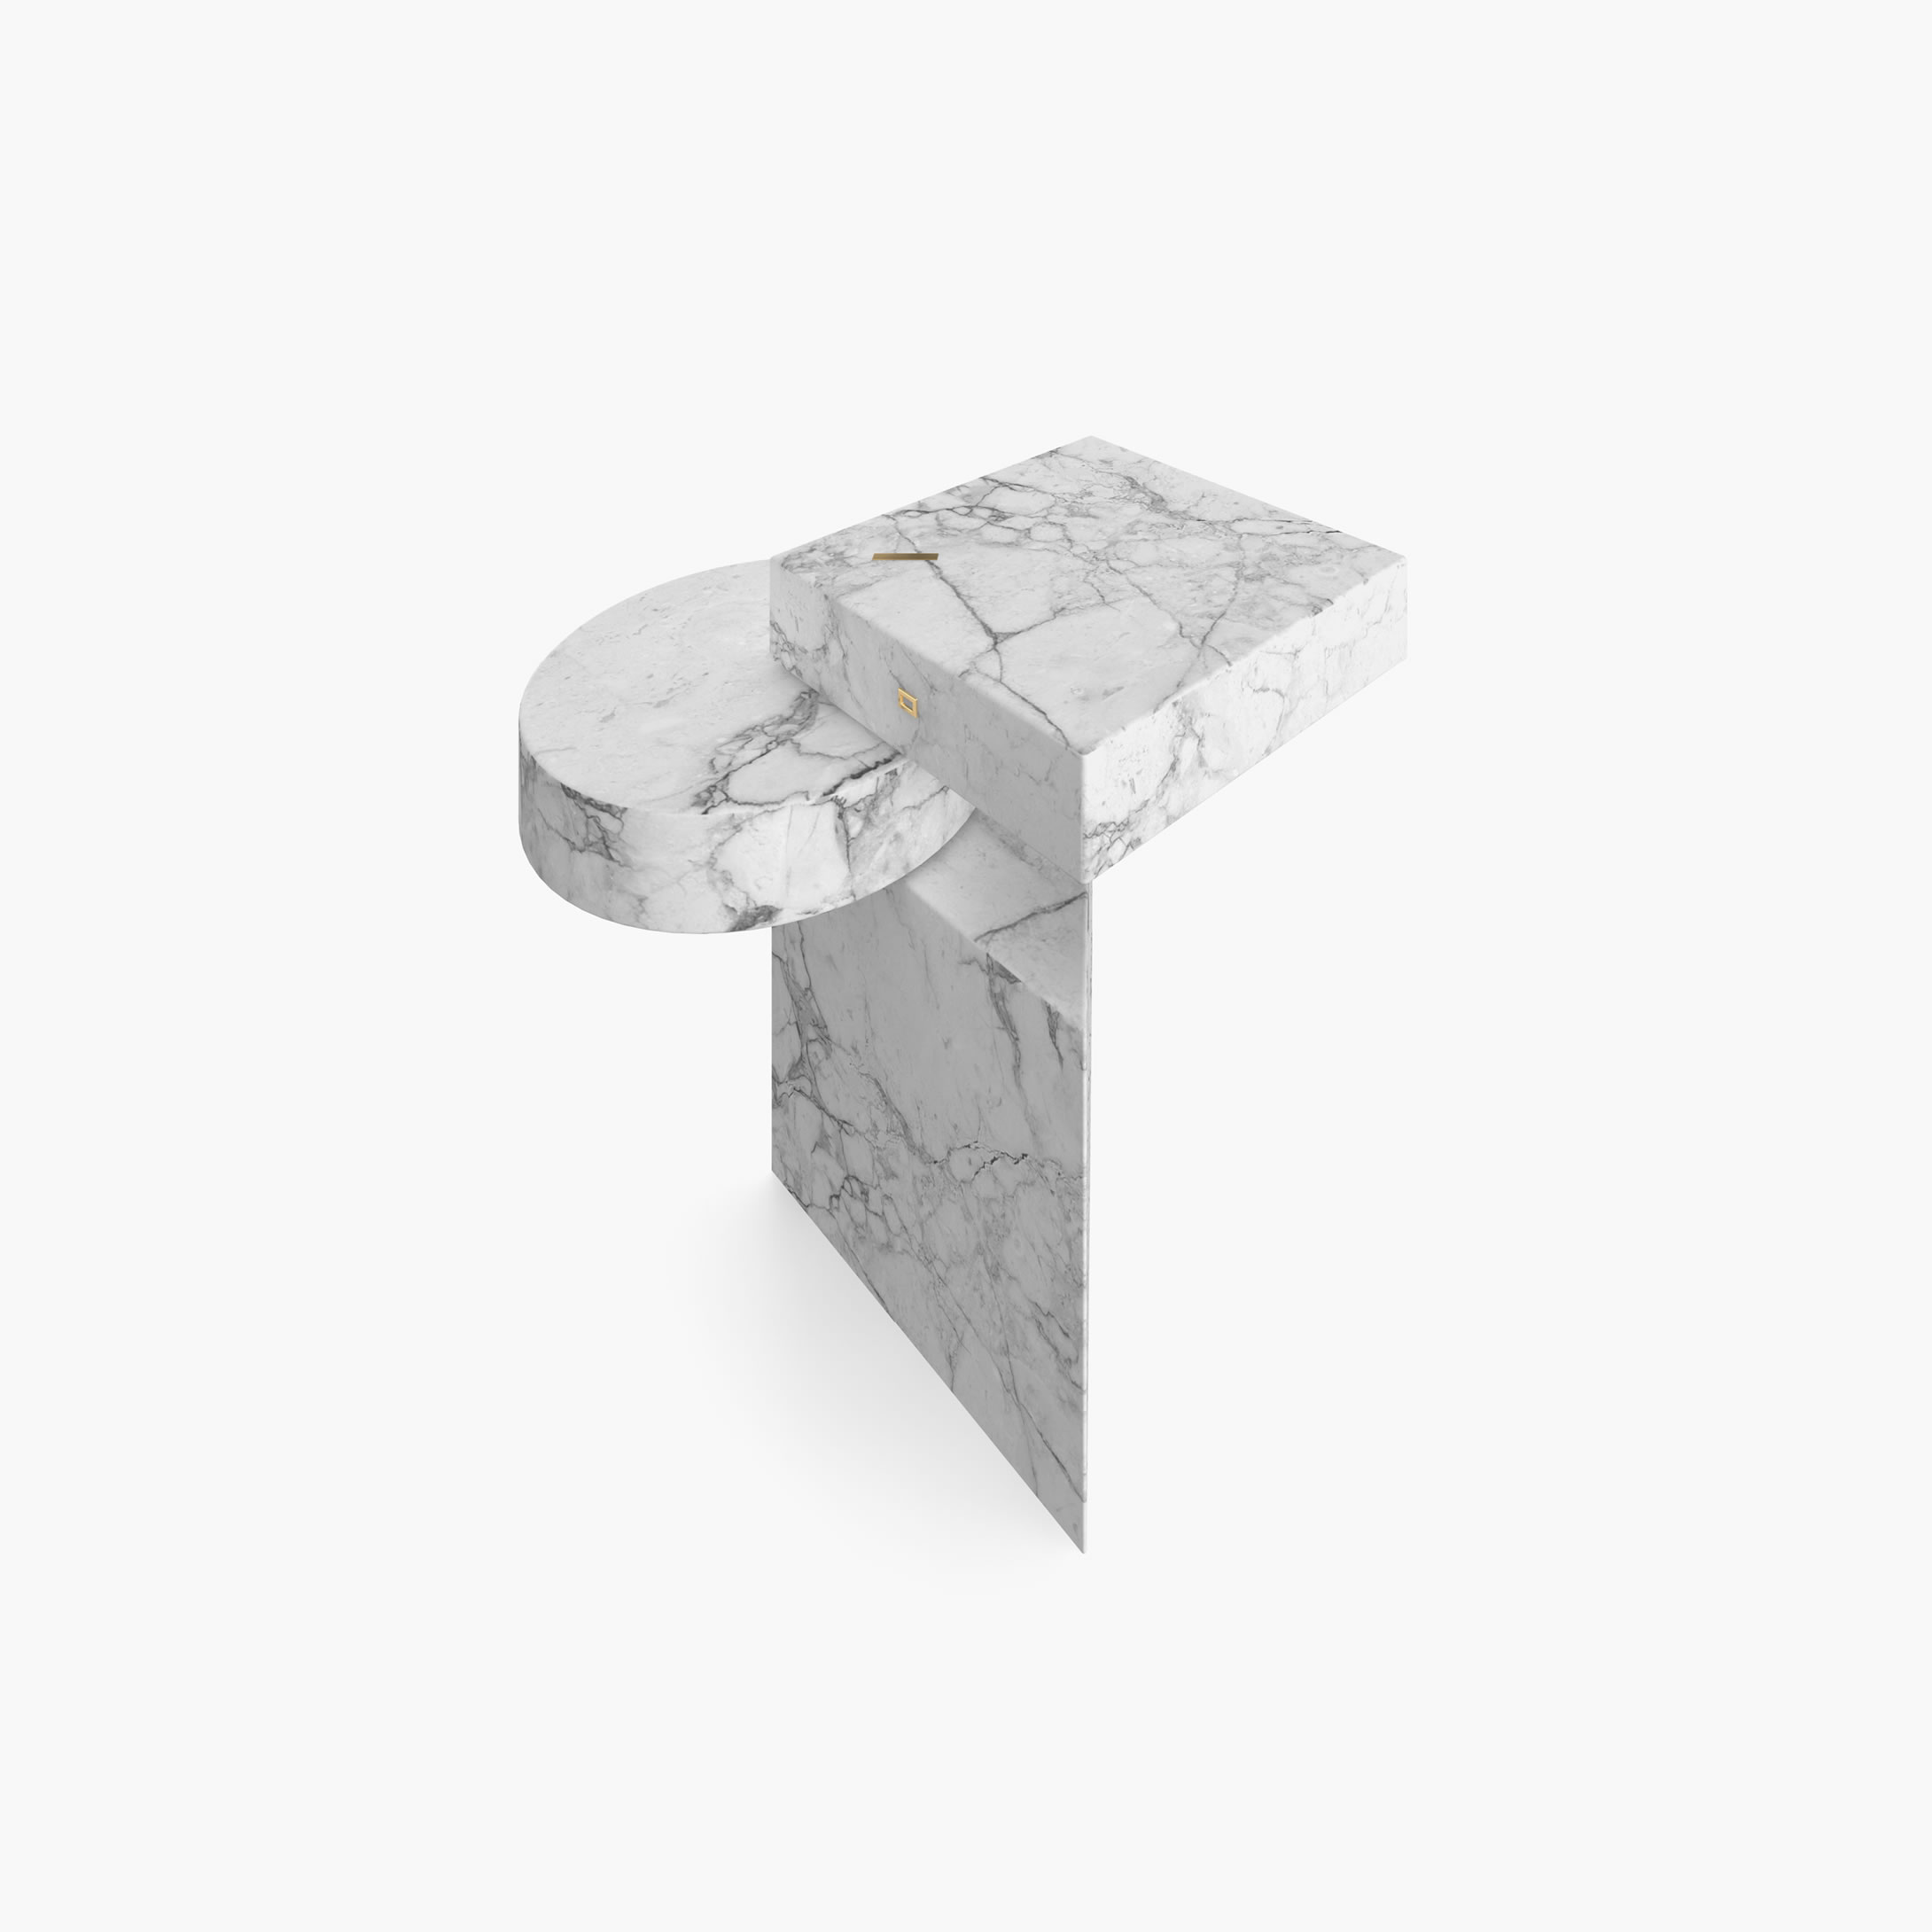 Beistelltisch Zylinder Quader Prisma Weiss Arabescato Marmor elegant Wohnzimmer Kunstwerk Beistelltische FS 116 FELIX SCHWAKE